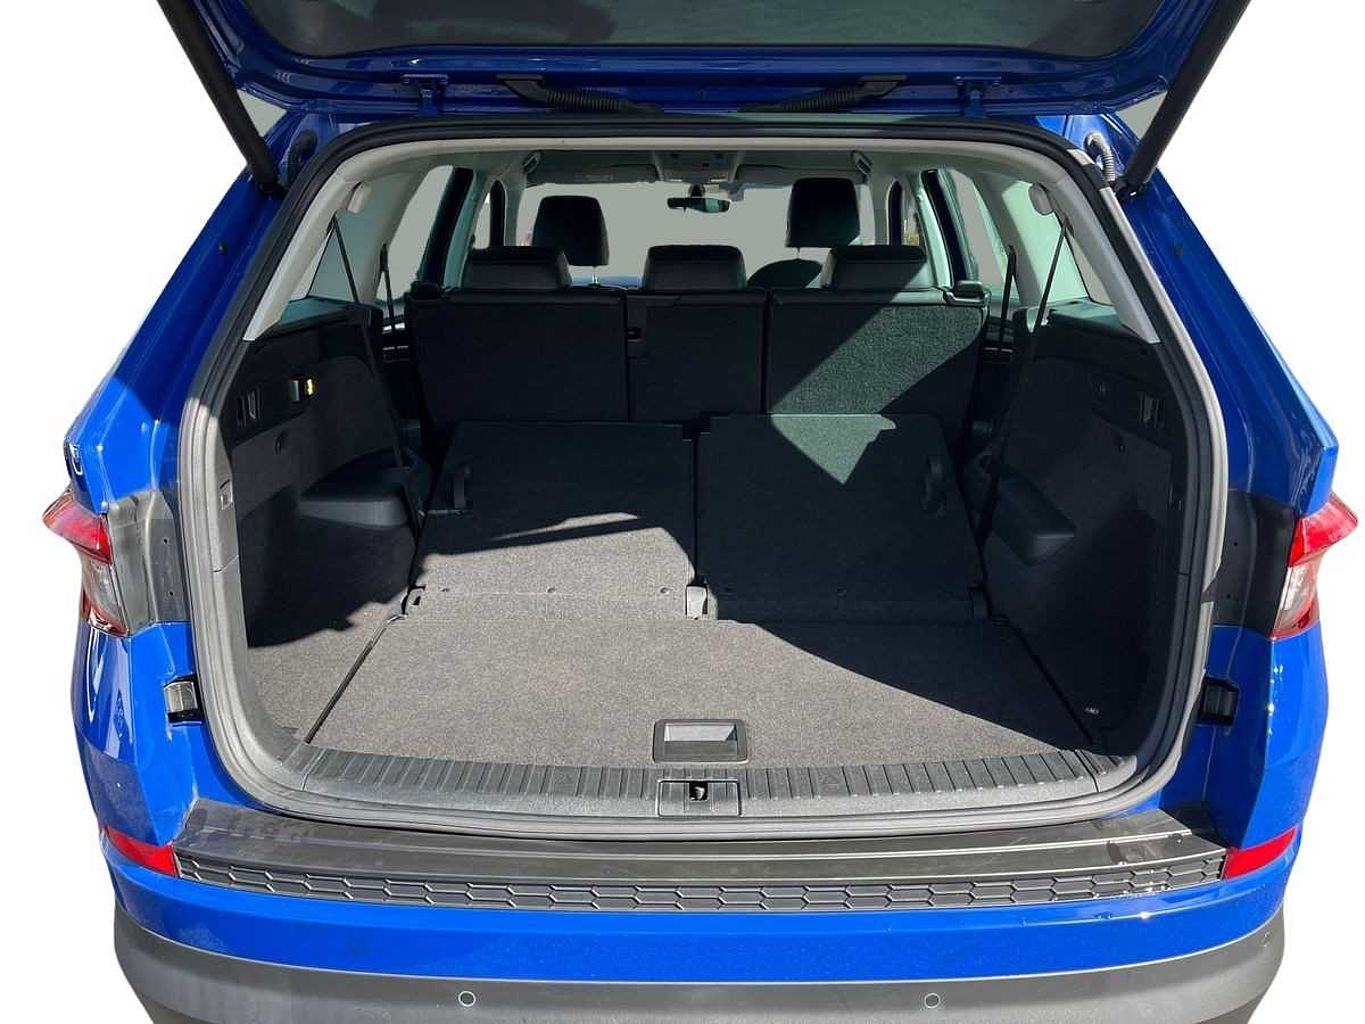 SKODA Kodiaq 2.0TDI (150ps) 4X4 SE L 7 seats SCR DSG SUV